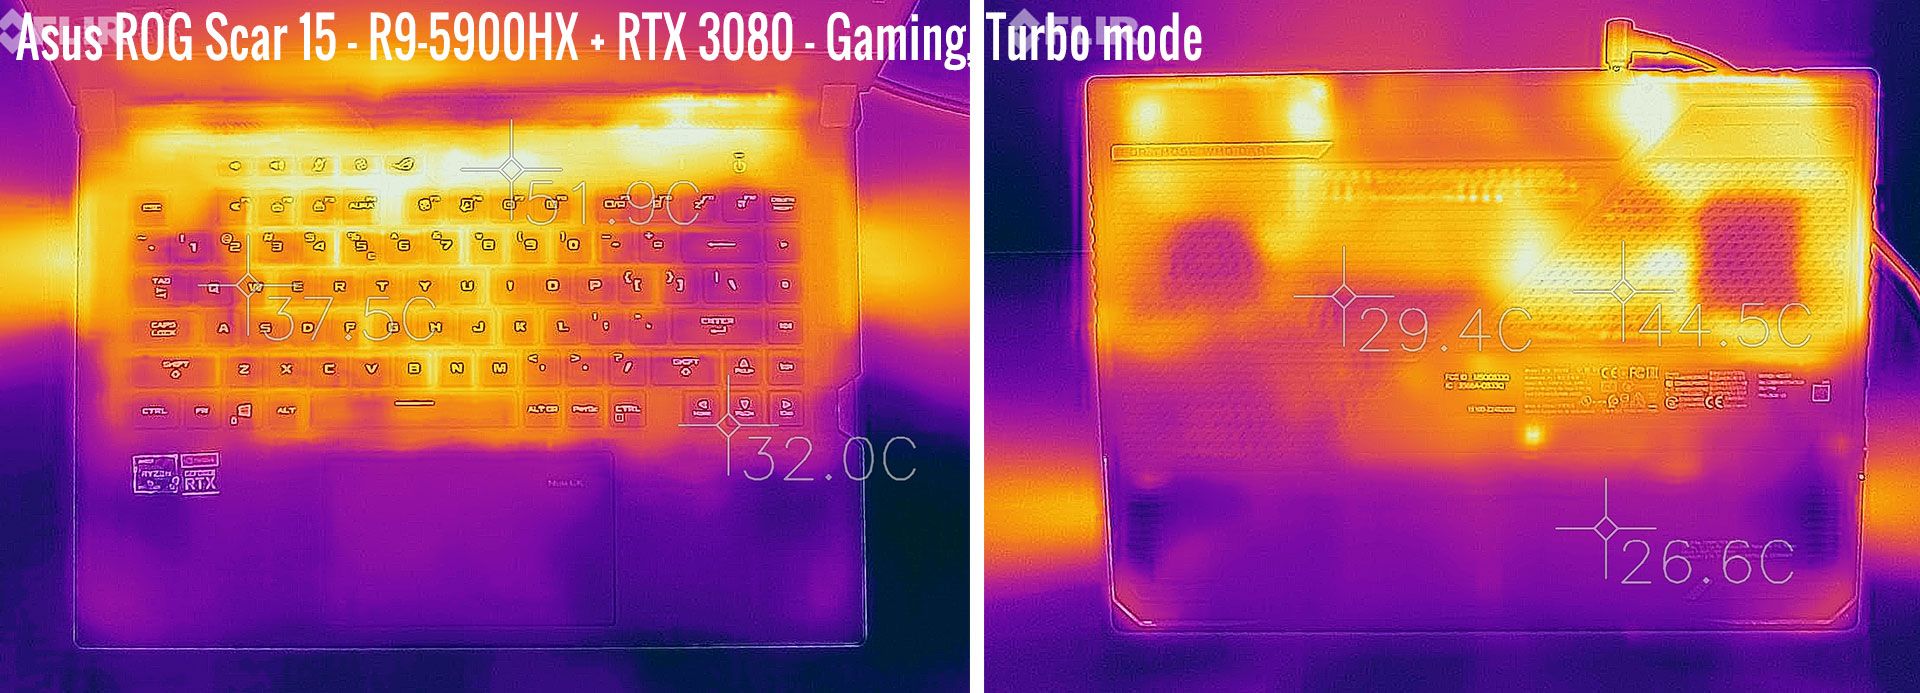 temperatures scar15 gaming turbo